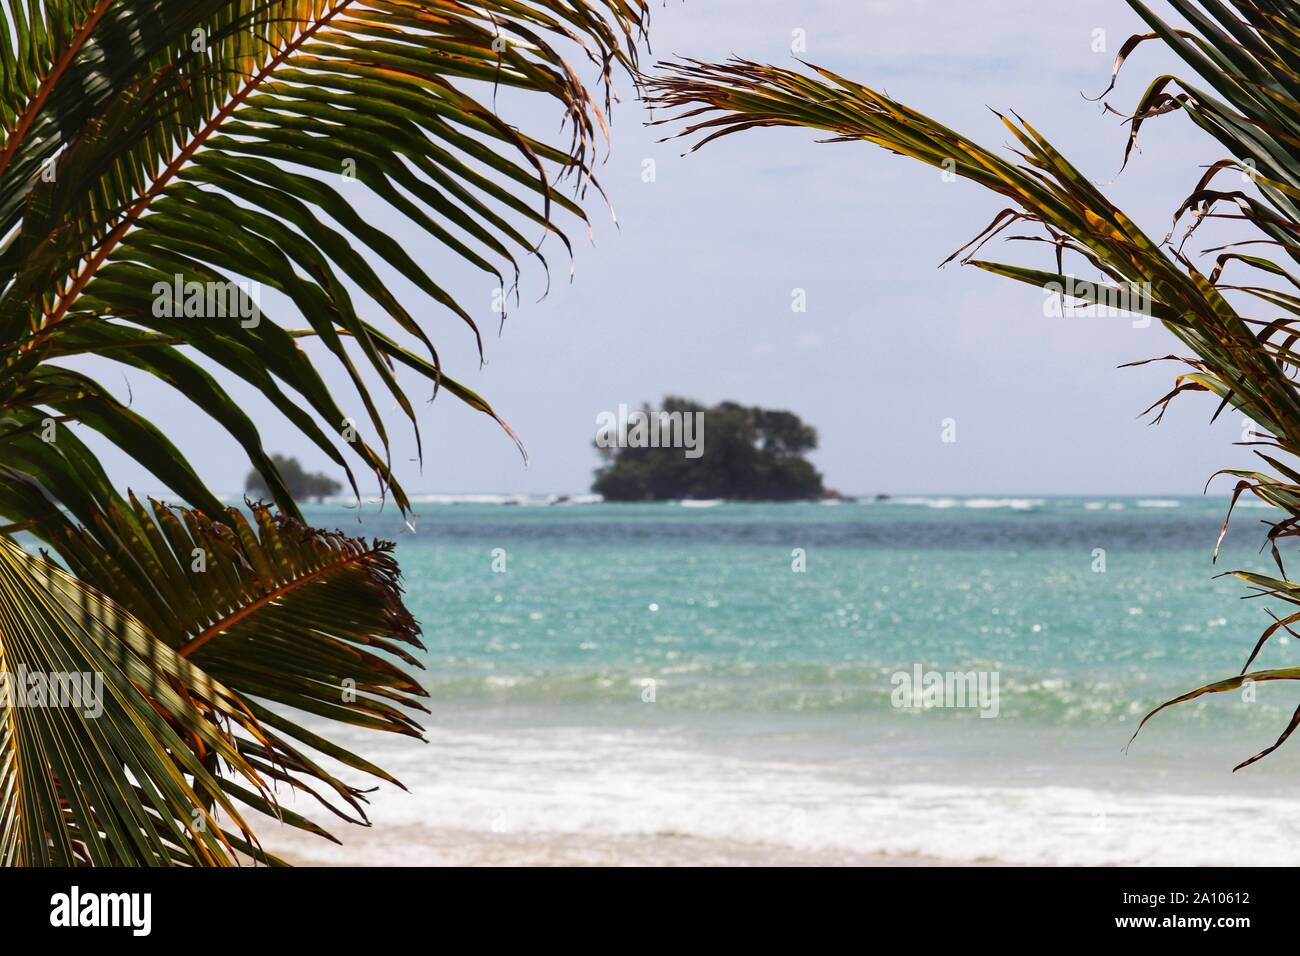 Tropical beach, vue sur la mer et l'île à travers les feuilles de palmier, selective focus Banque D'Images